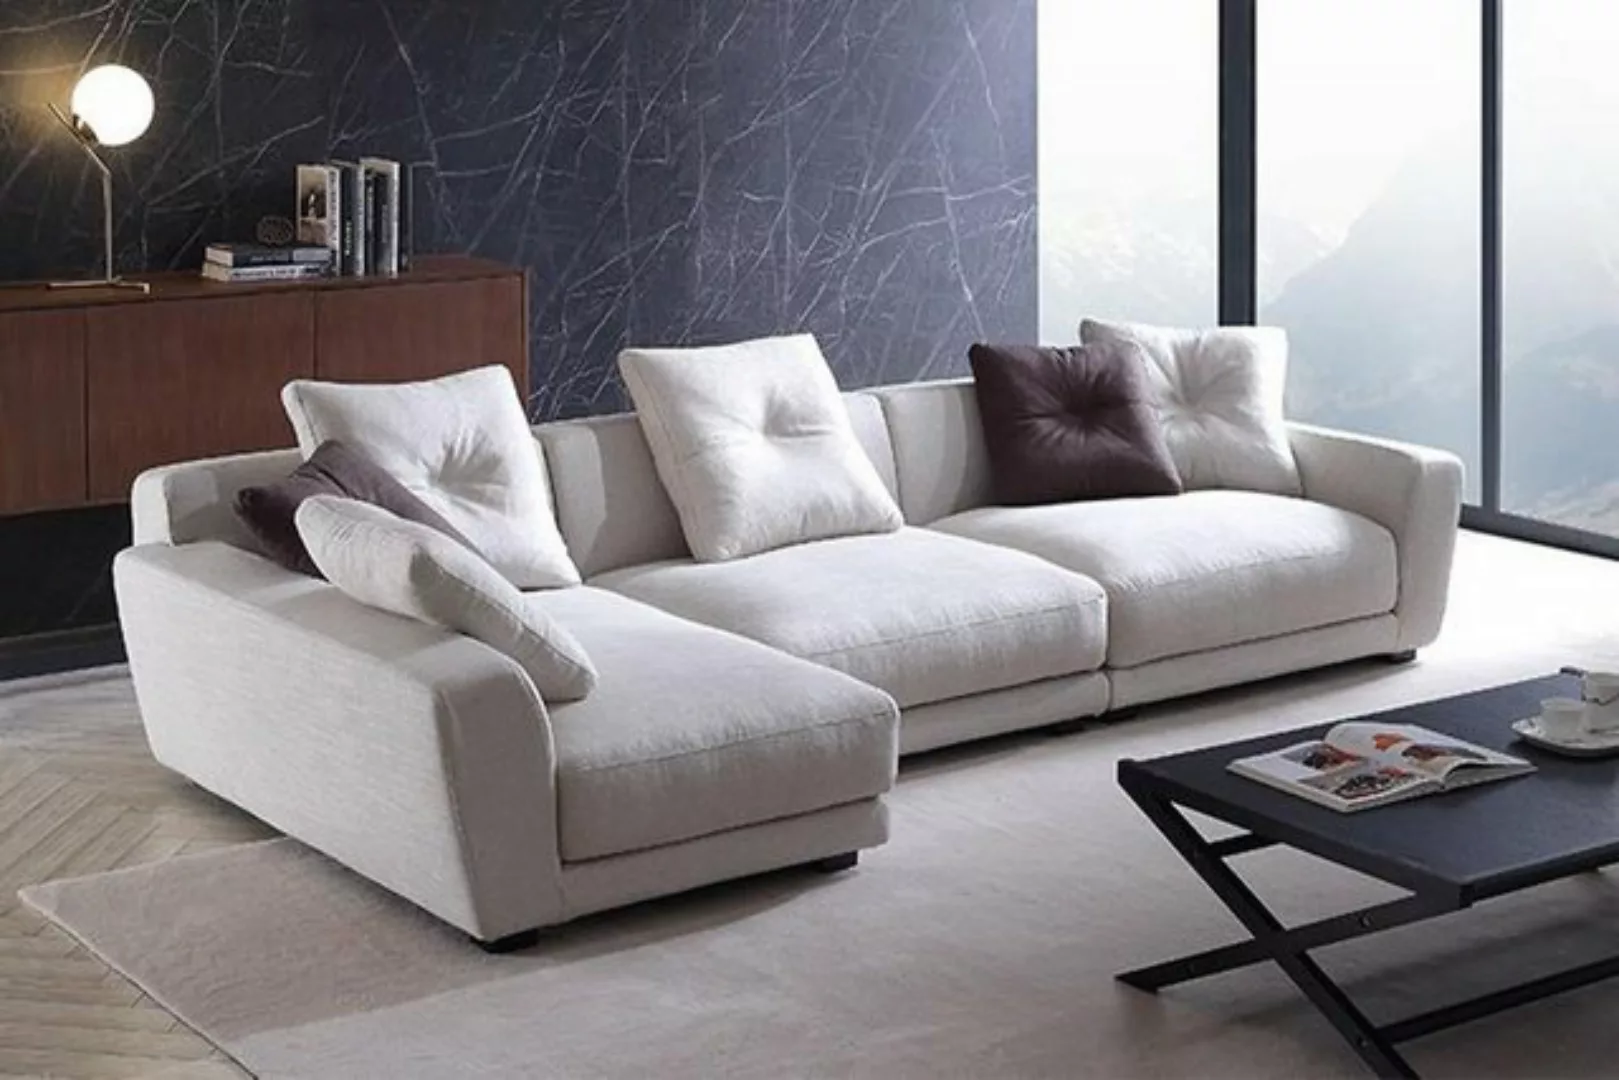 JVmoebel Ecksofa Designer weißes Ecksofa L-Form Couch Polstermöbel Sofa Neu günstig online kaufen